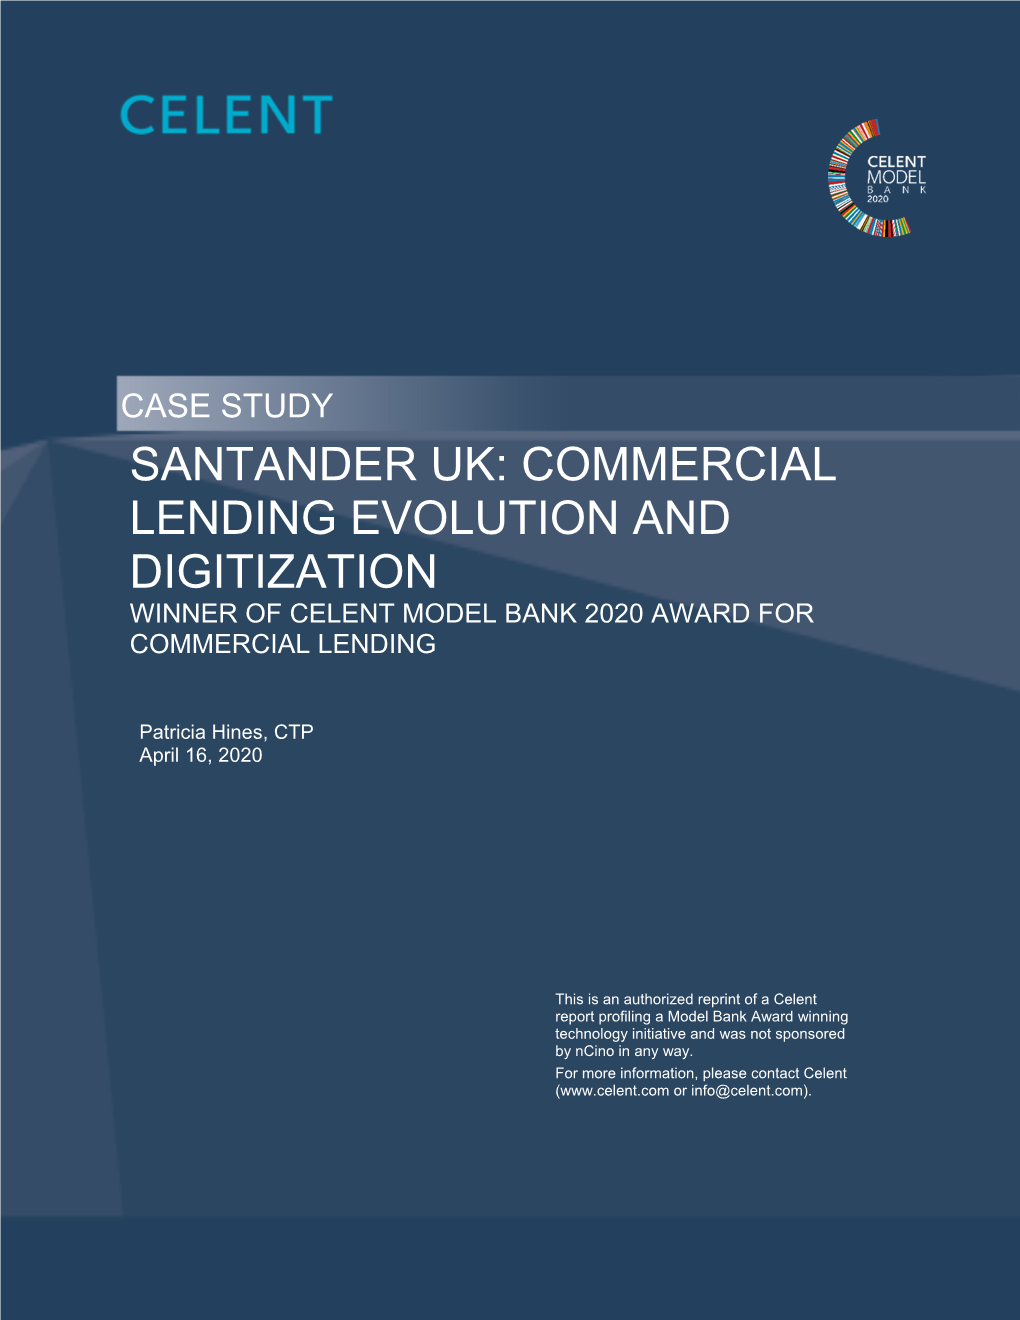 Santander Uk: Commercial Lending Evolution And